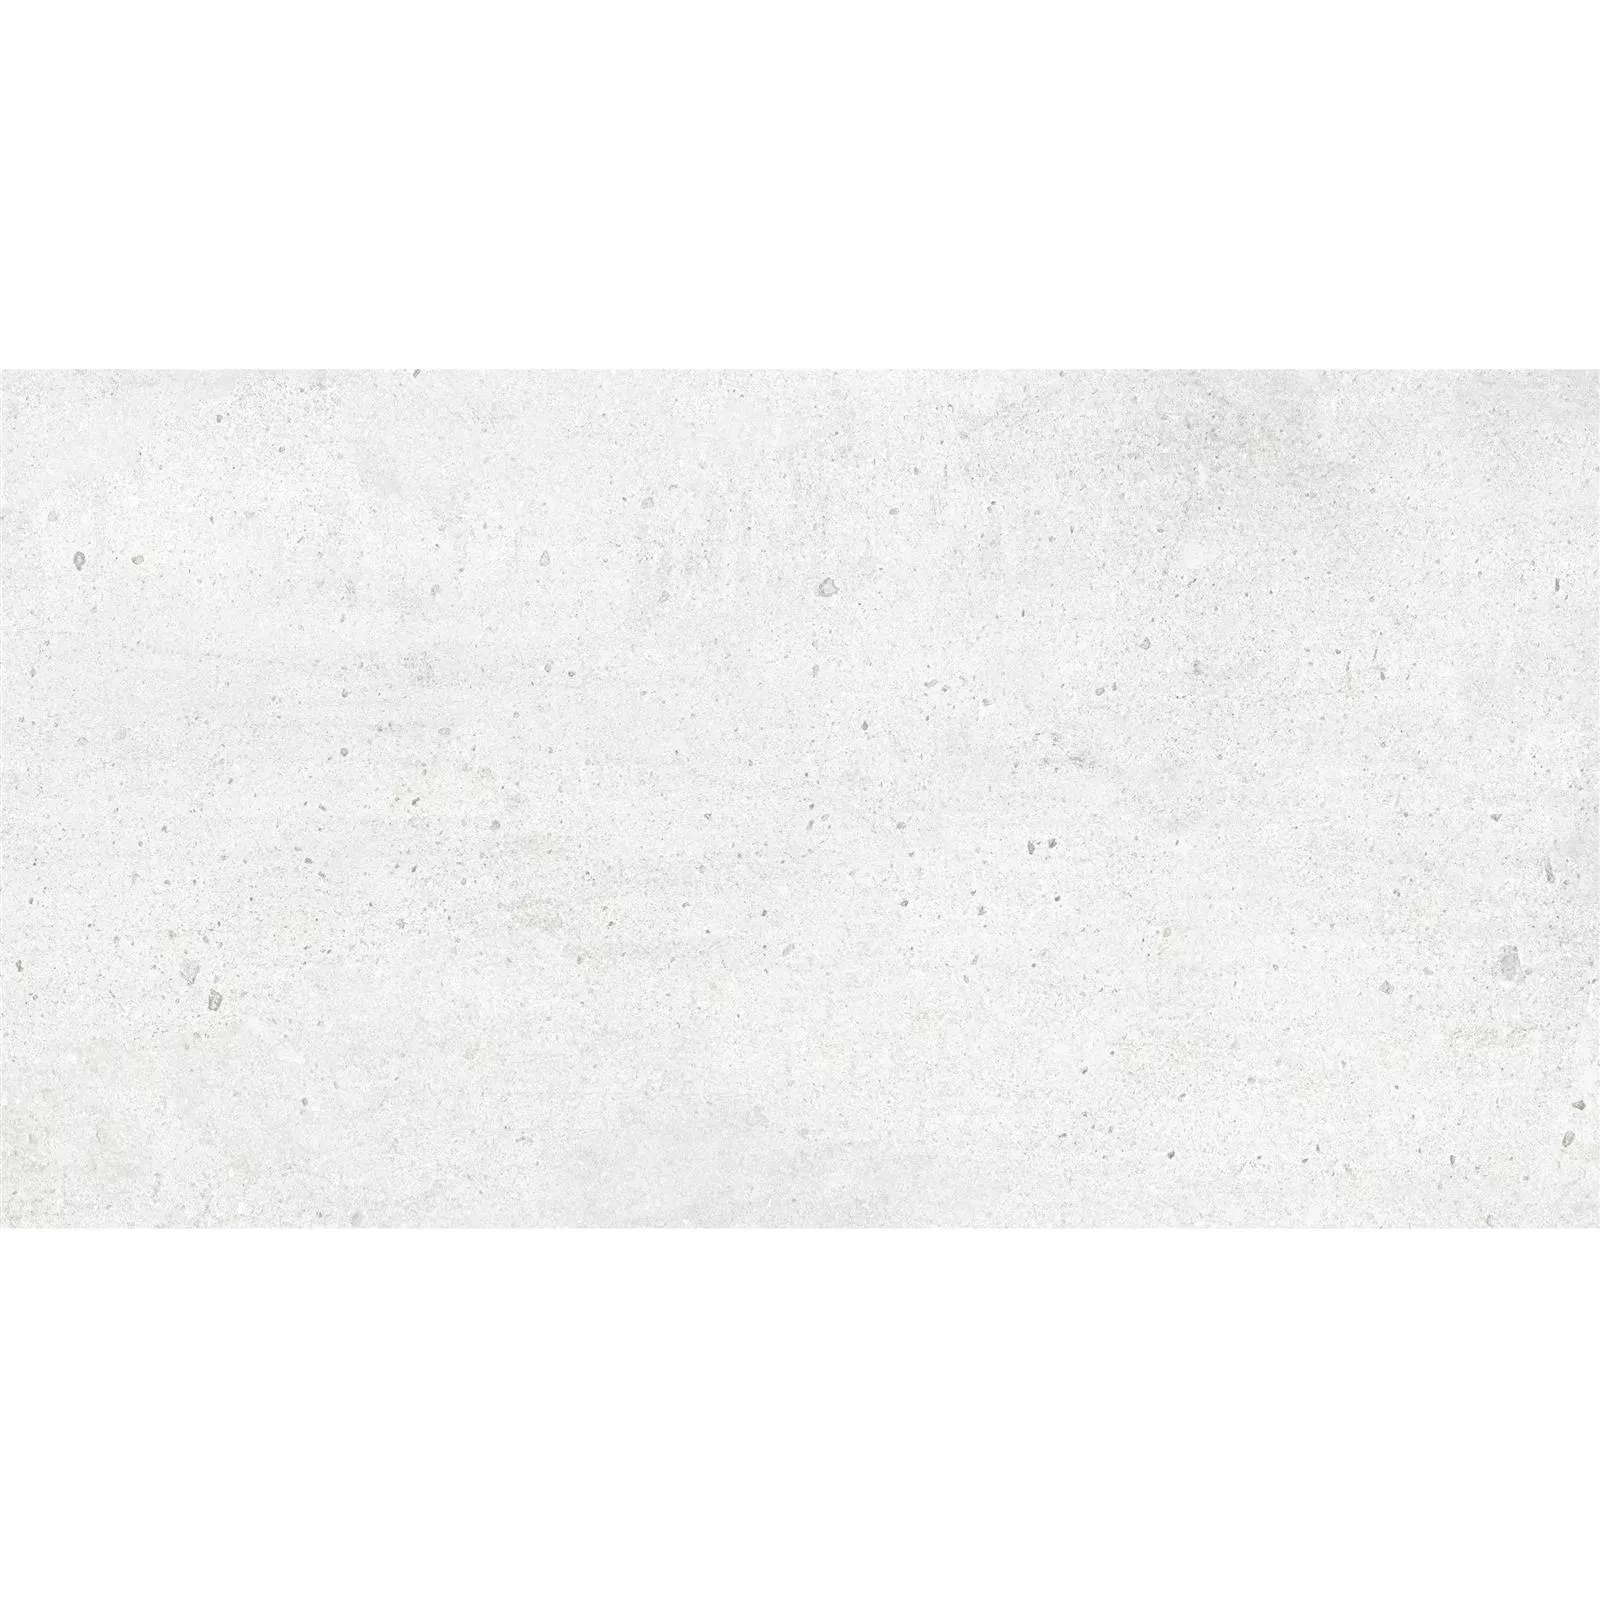 Sample Bodenfliesen Freeland Steinoptik R10/B Weiß 30x60cm